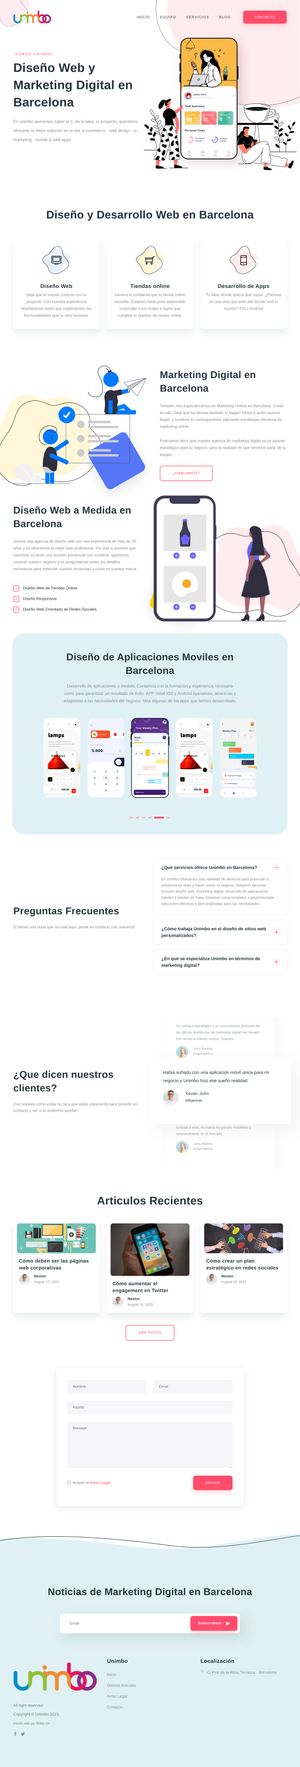 Ejemplo de diseño web completo en Palma de Mallorca: Muestra la página web profesional que ha diseñado Ridaly para unimbo